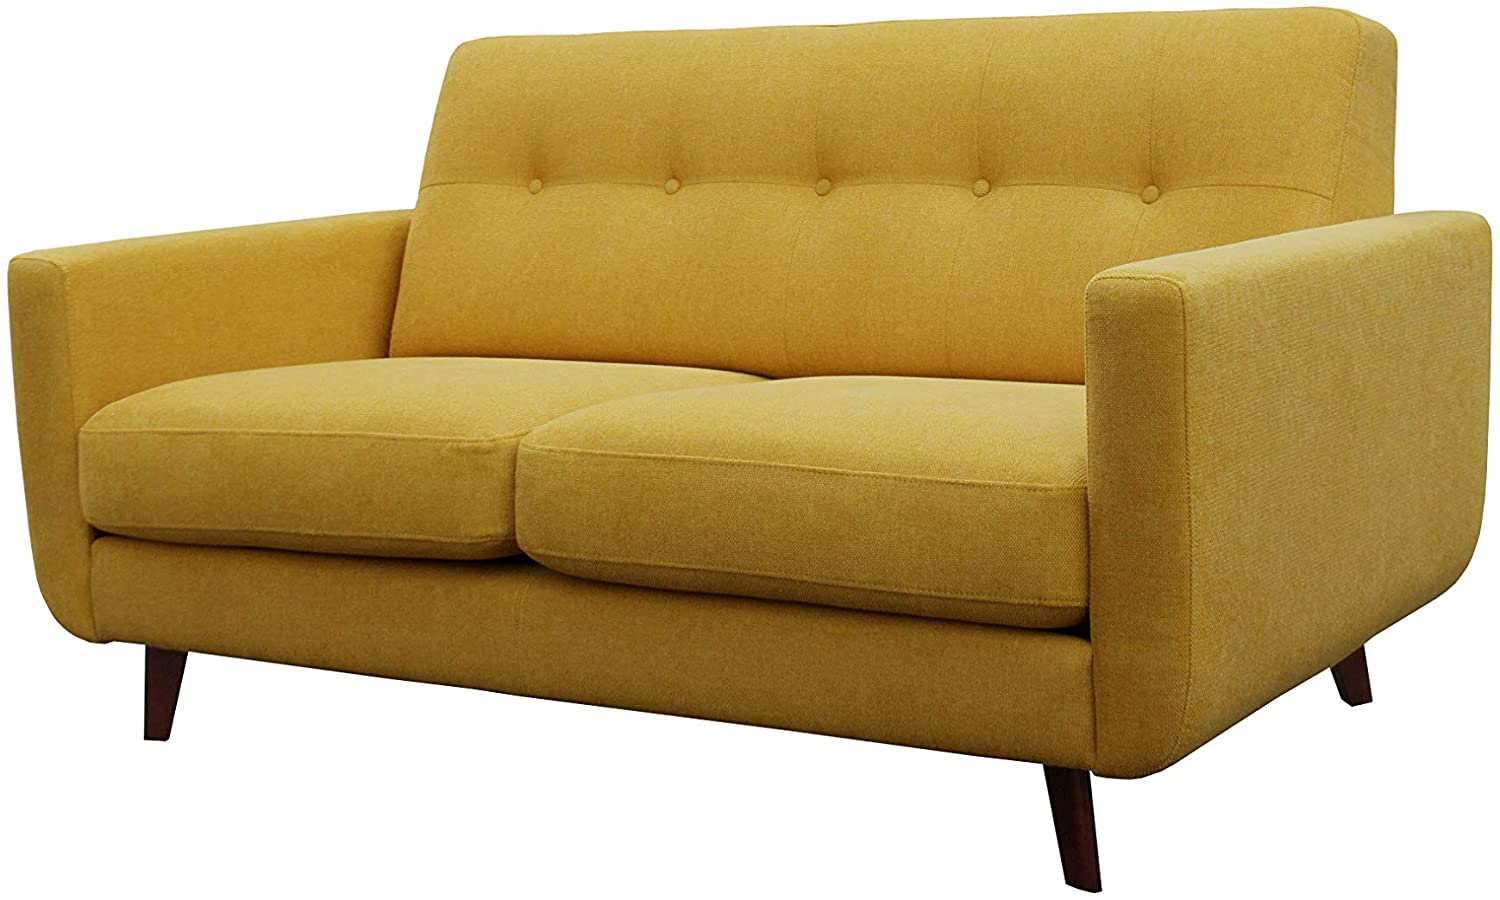 sofa for rentals